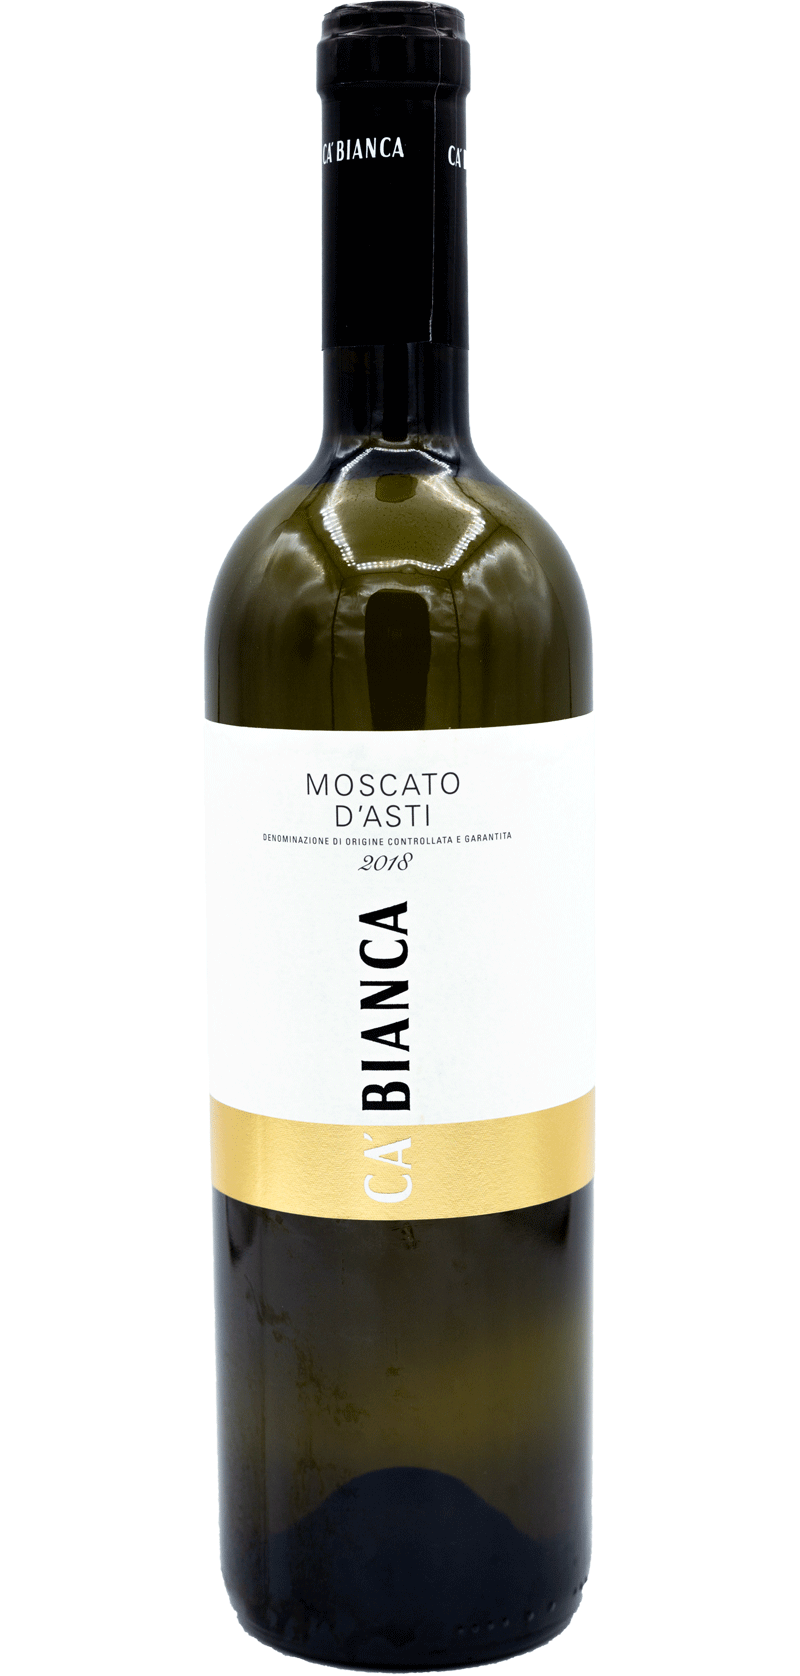 Ca Bianca de Moscato d’Asti – 2018 – Italian White Wine